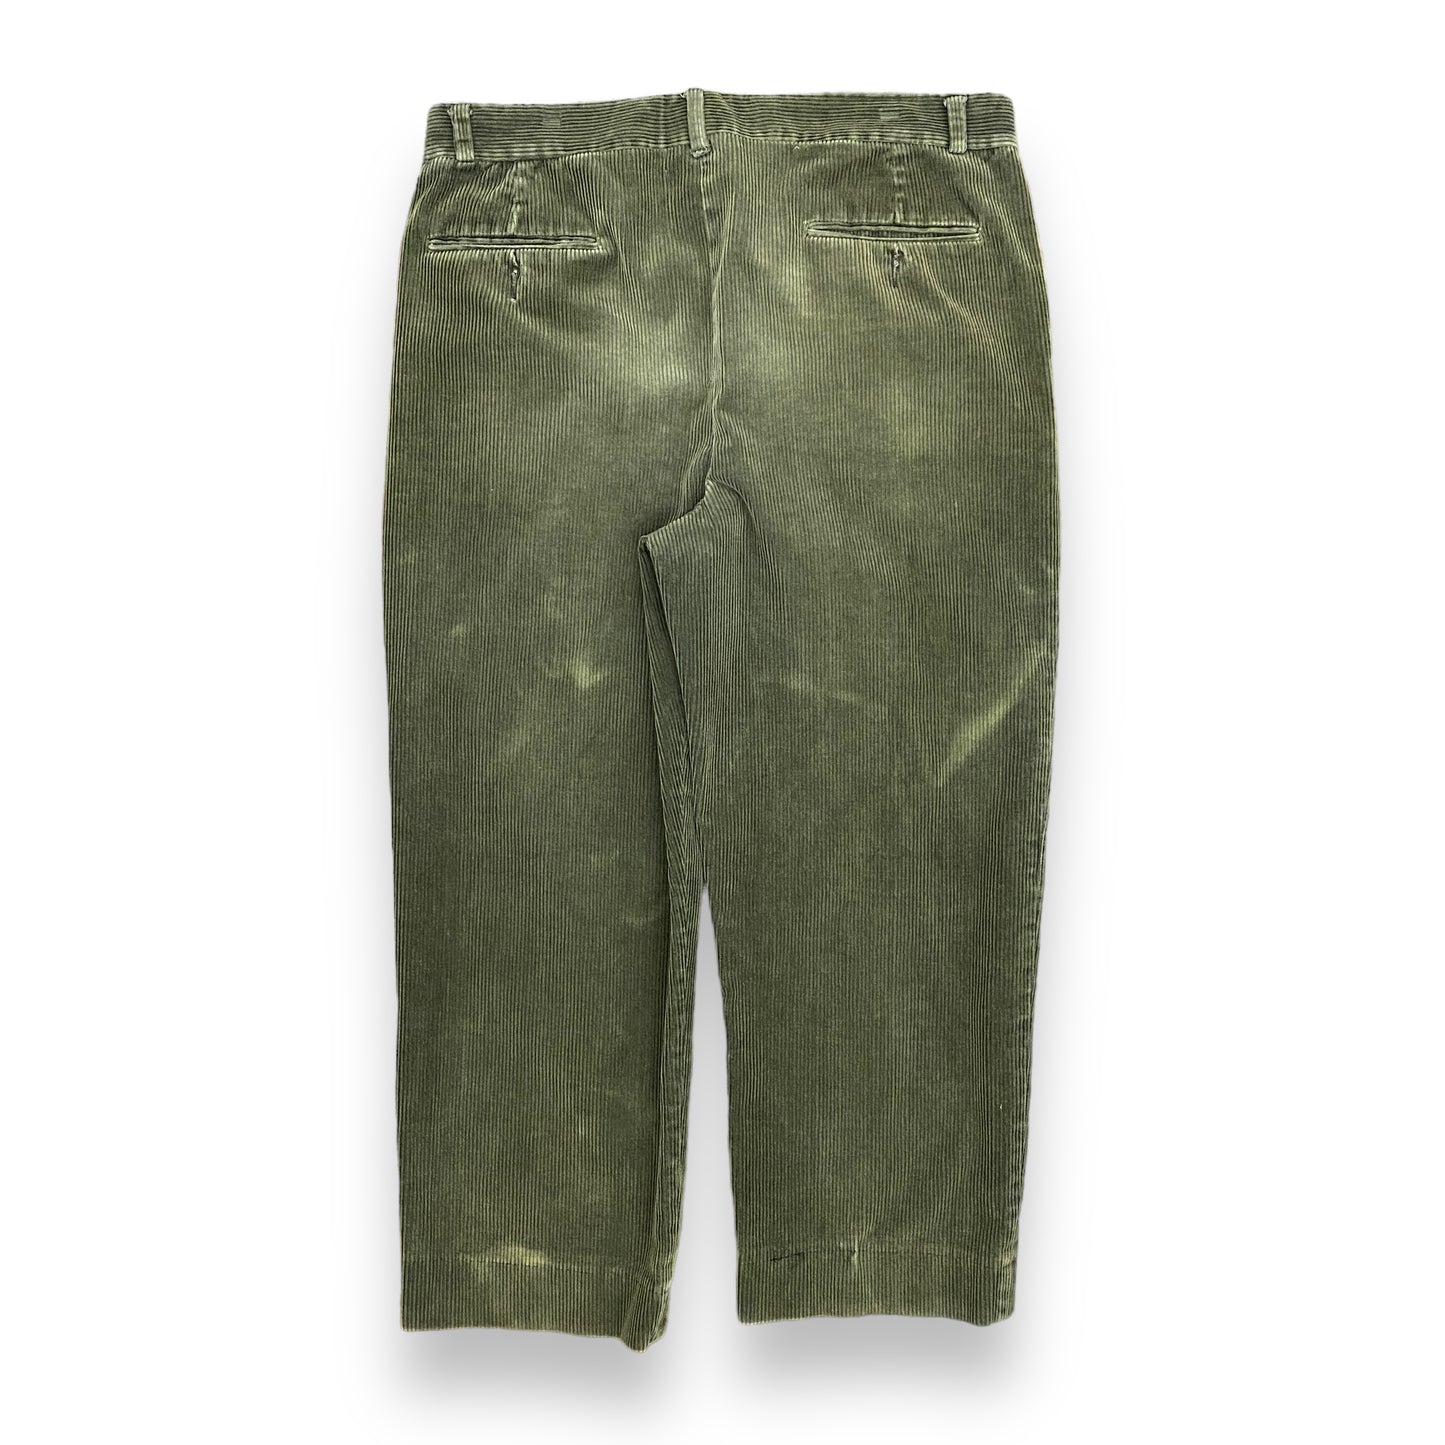 Vintage Dark Green Pleated Corduroy Pants - 36"x28"